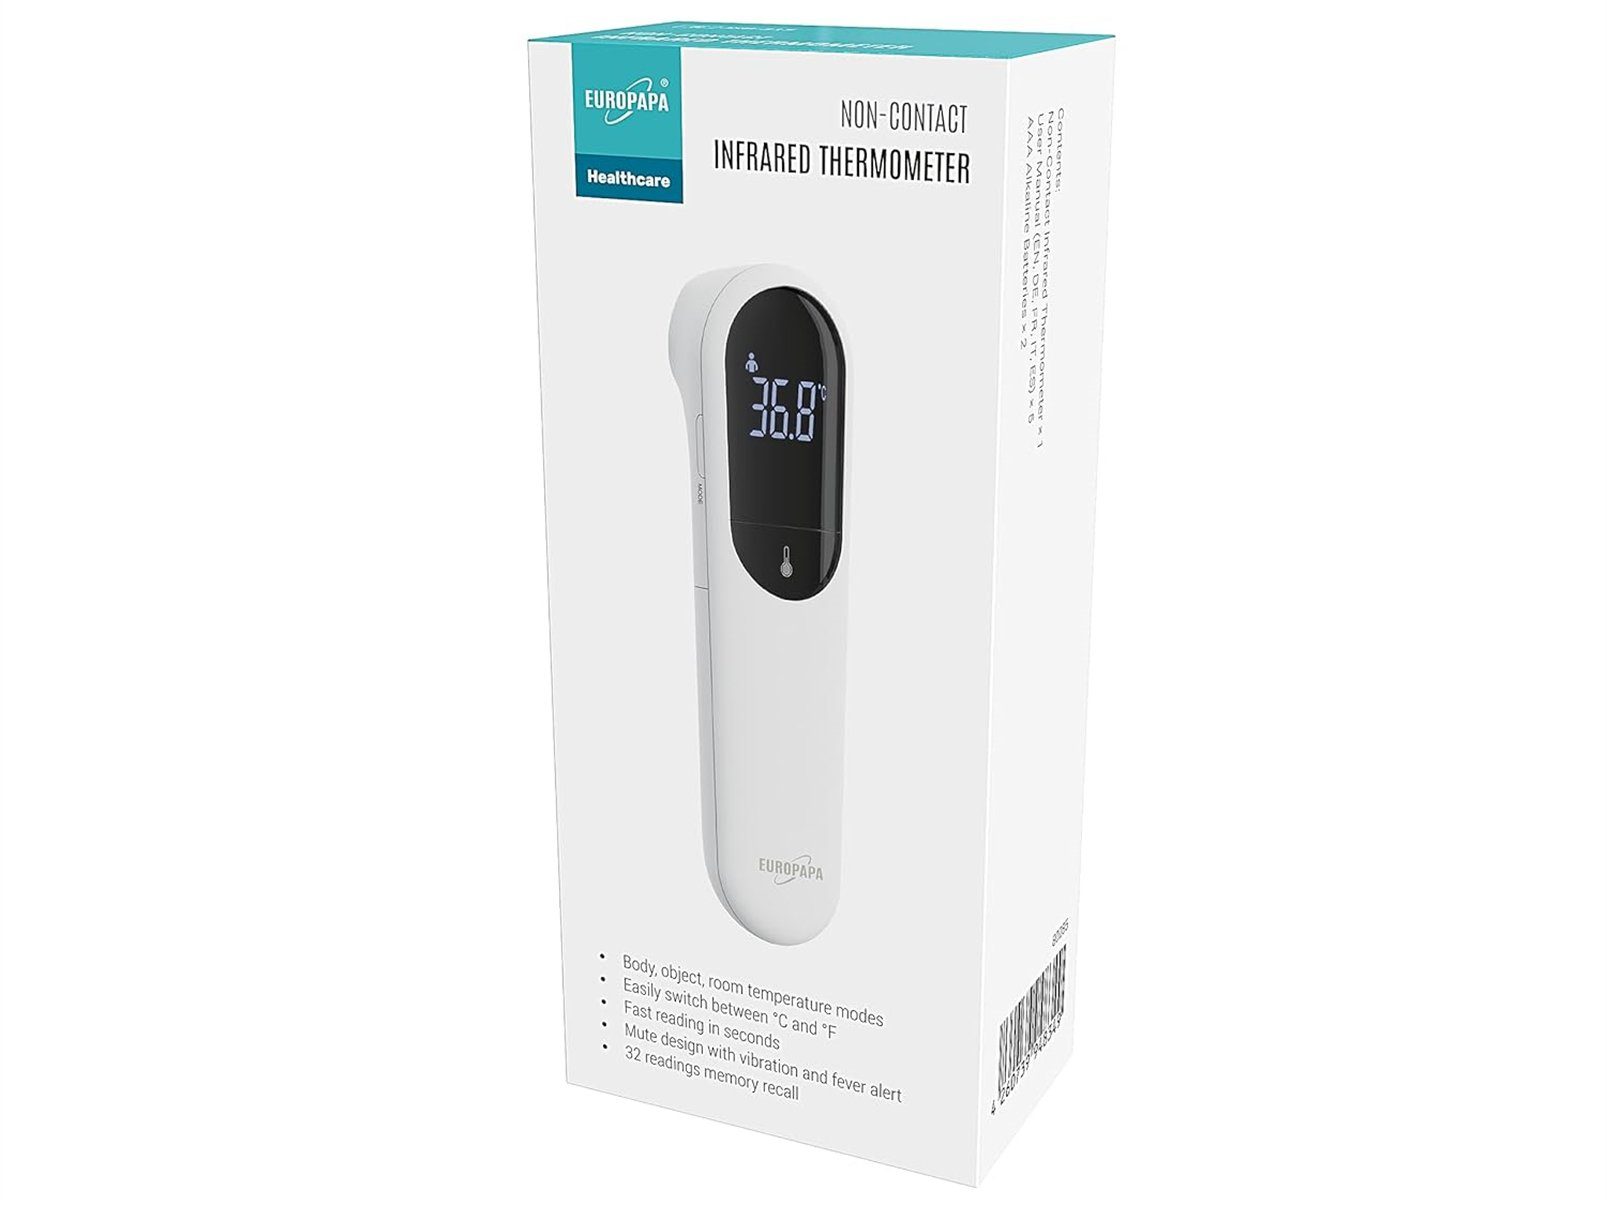 EUROPAPA Fieberthermometer Fieberthermometer für Baby Kinder Erwachsene, 1 x Fieberthermometer & 2 x AAA-Batterien im Lieferumfang enthalten, Stirnthermometer, Fieberalarm, °C/°F Schalter, 32-facher Messwertspeicher